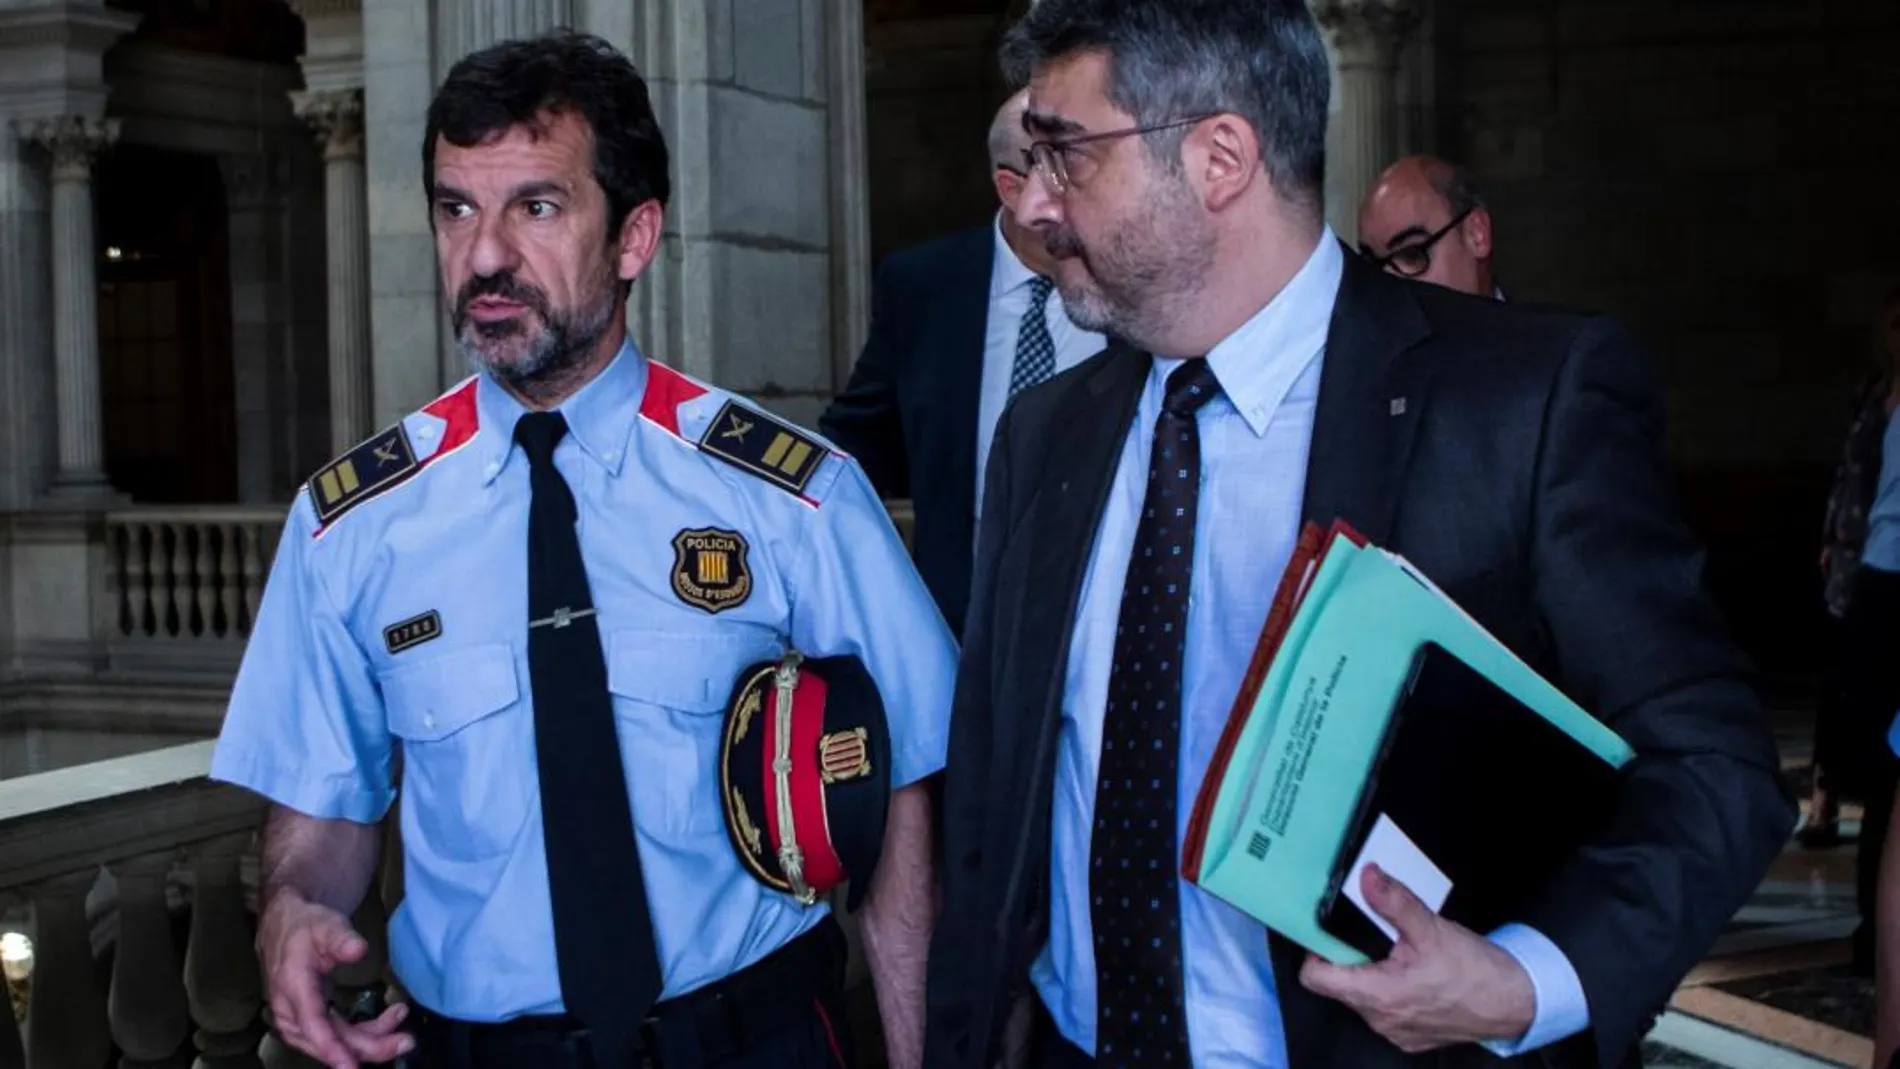 Ferran López, en la izquierda de la imagen, ha renunciado a ser responsable de los Mossos